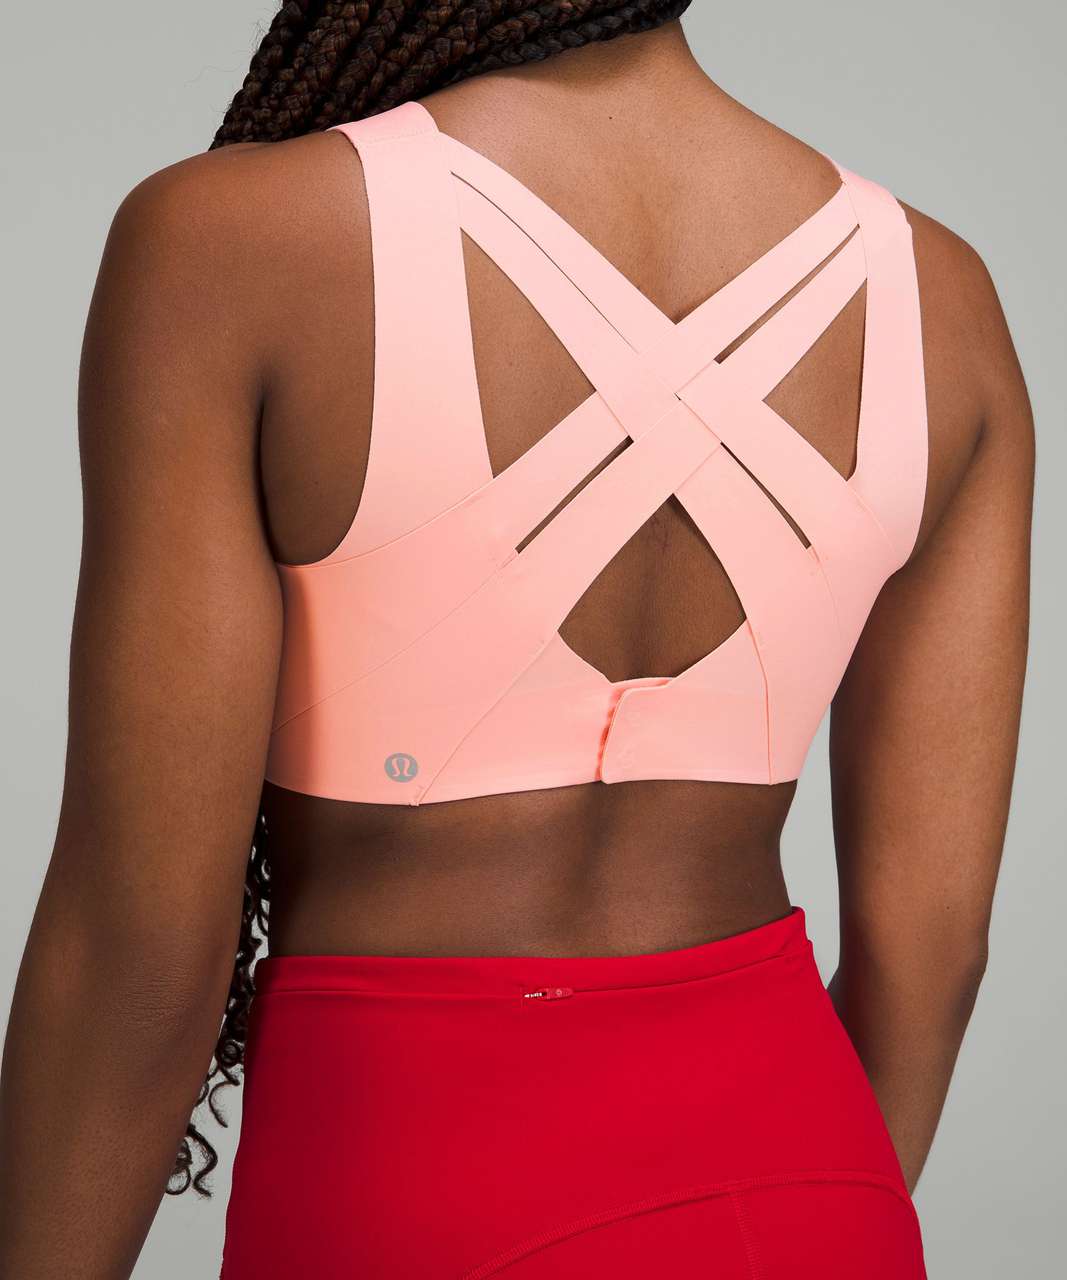 Lululemon Enlite Weave-Back Bra *High Support, A–DDD(E) Cups - Dew Pink